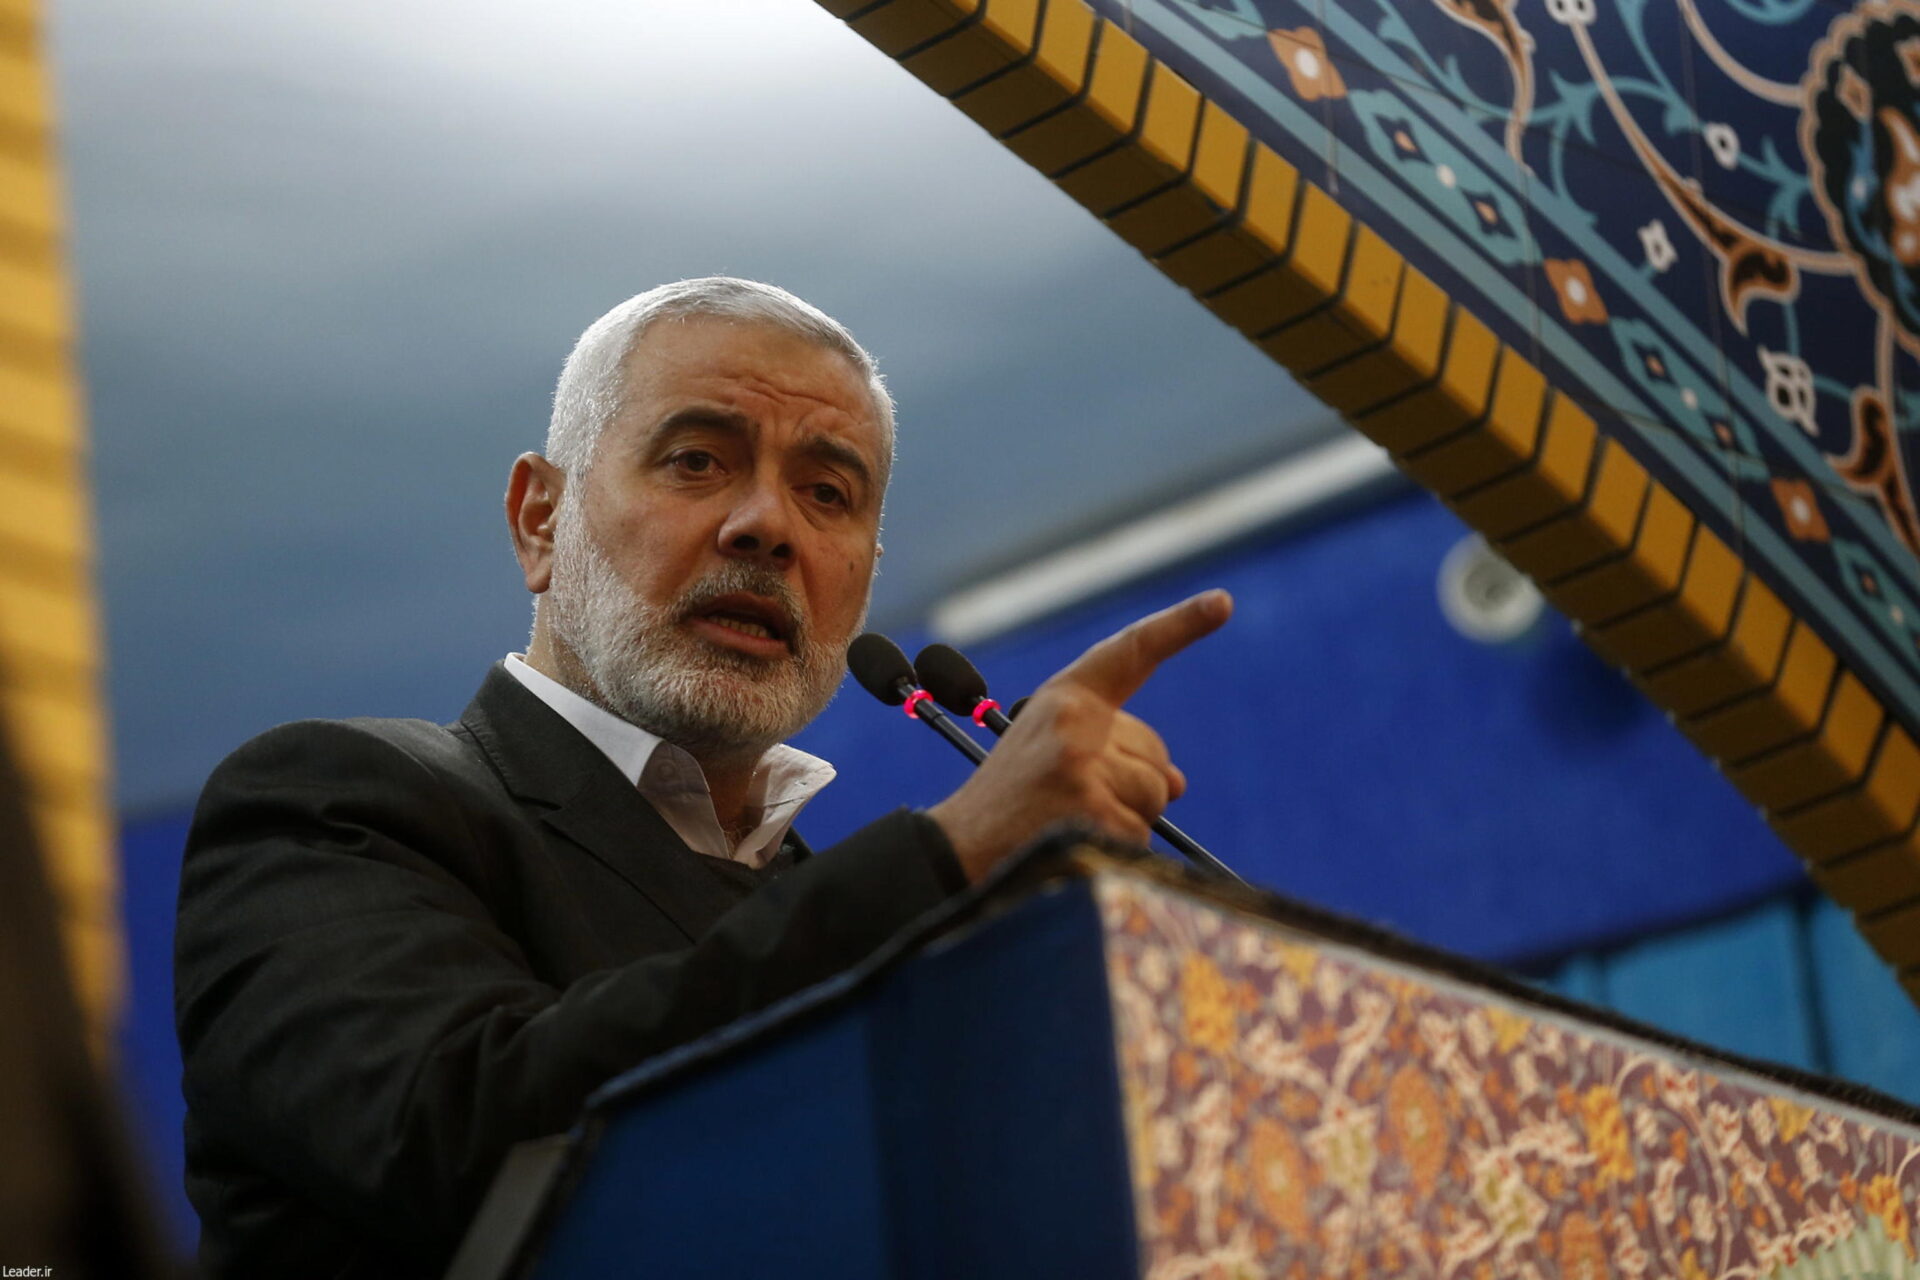 Colpo ad Hamas in Iran: ucciso il capo politico Haniyeh